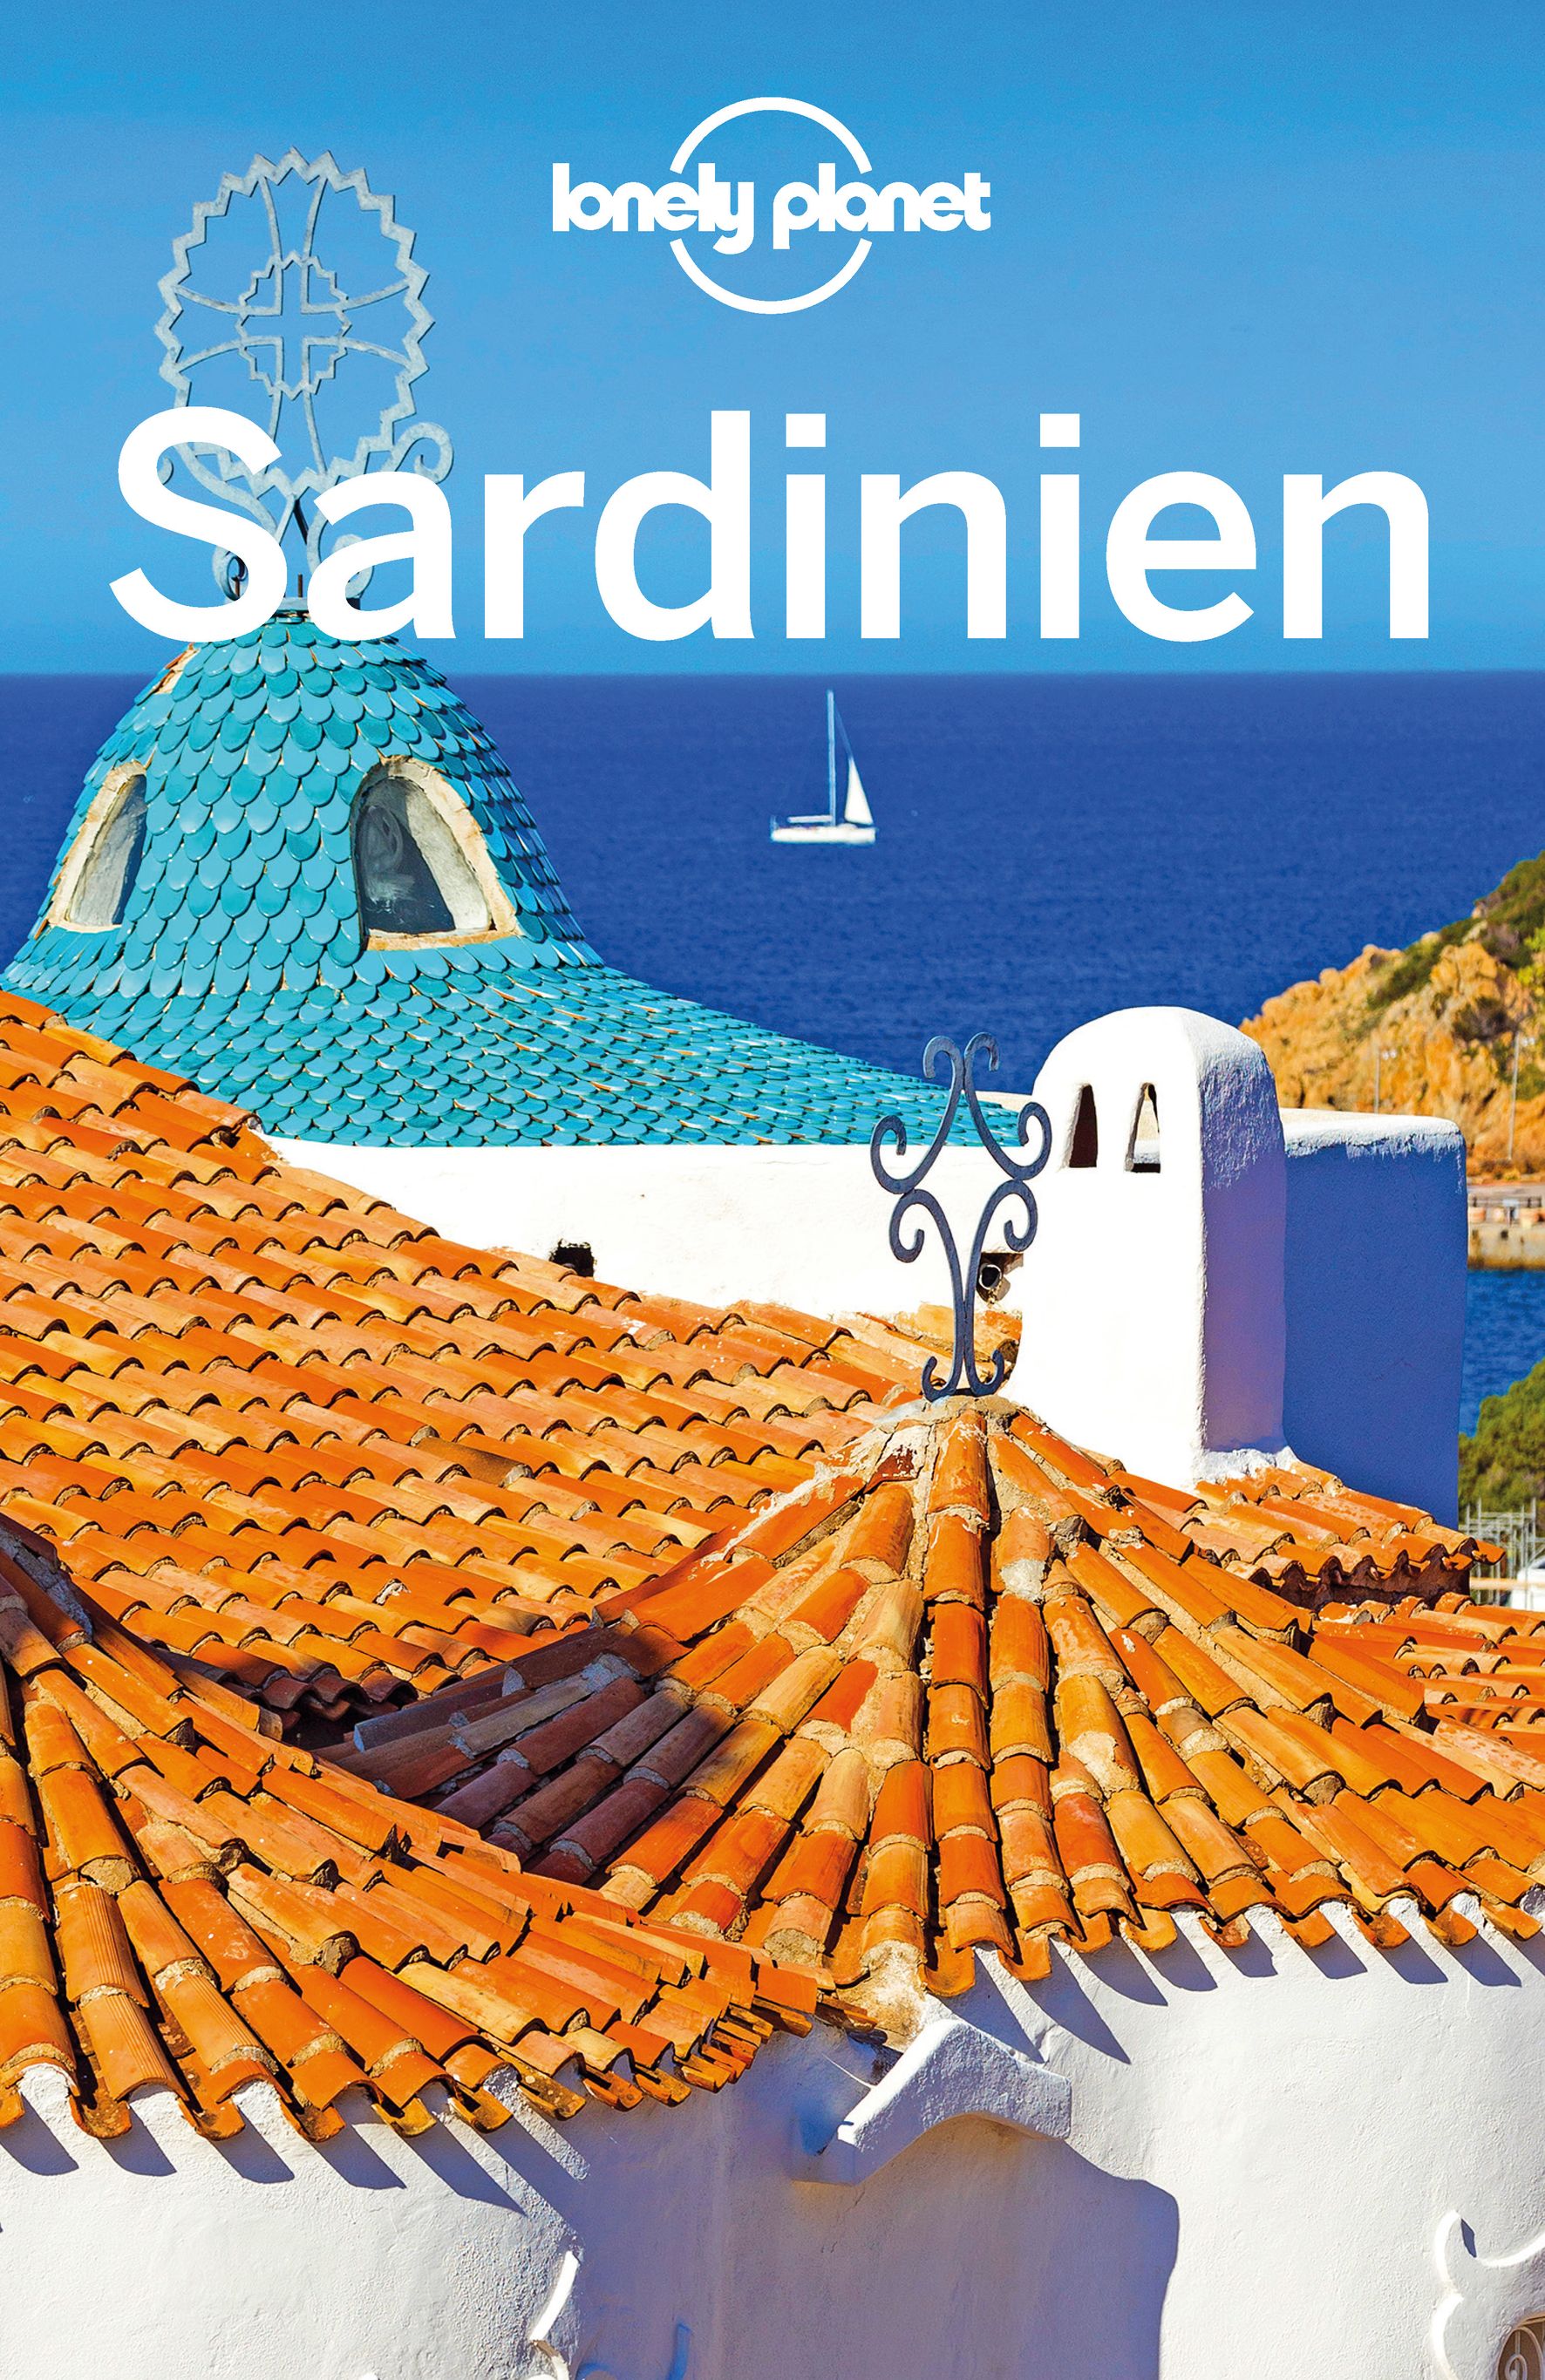 Lonely Planet Sardinien (eBook)